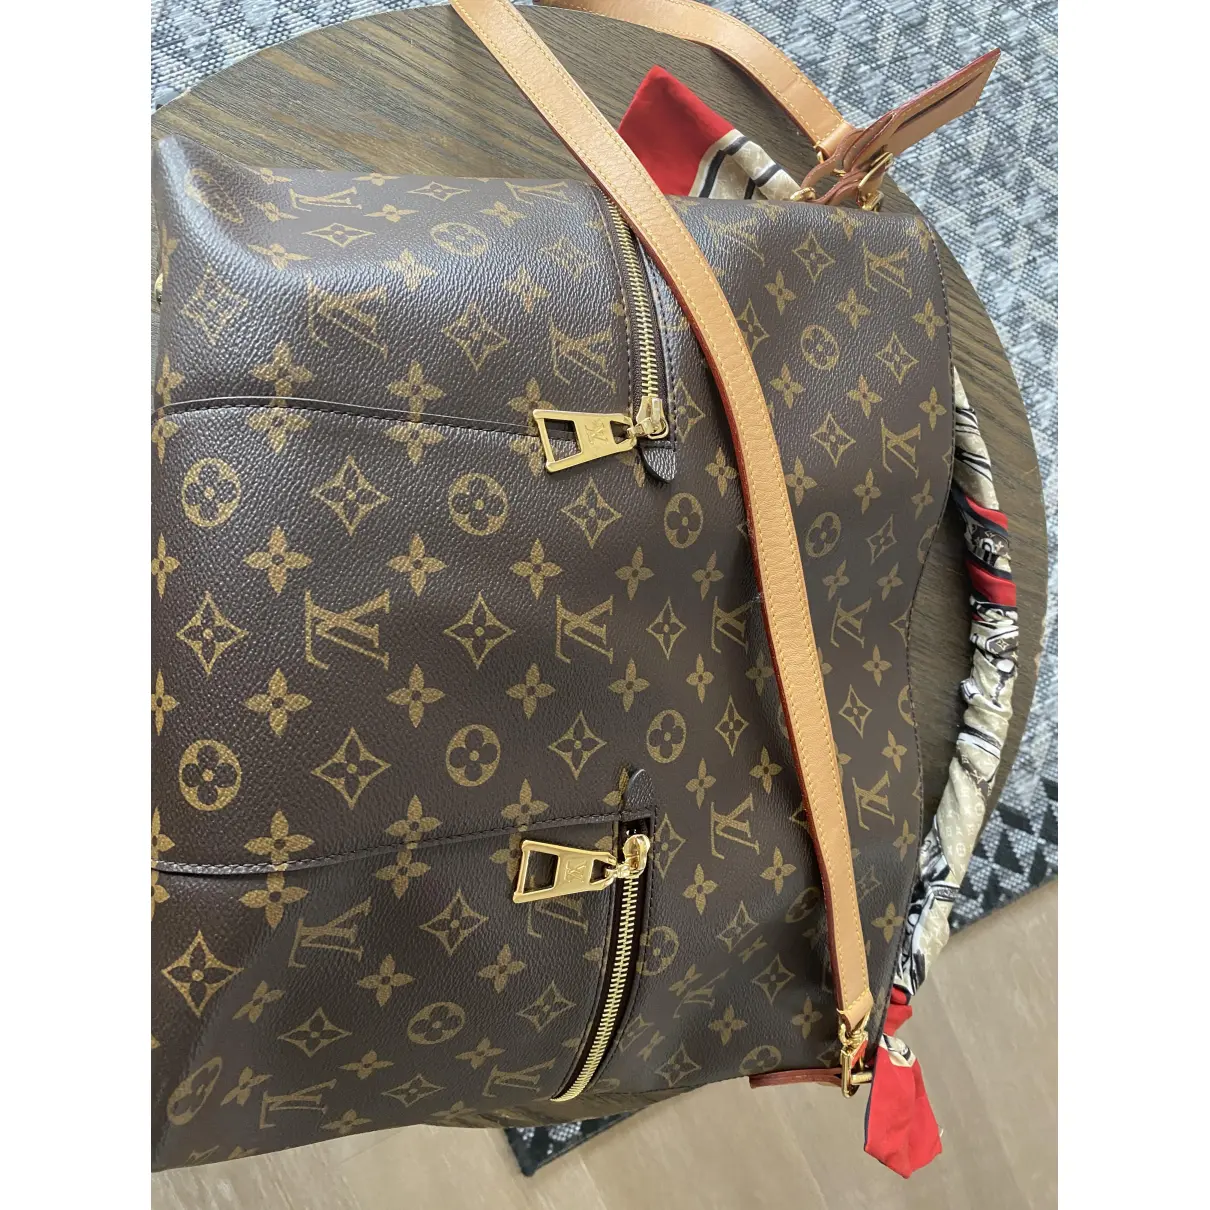 Mélie leather handbag Louis Vuitton